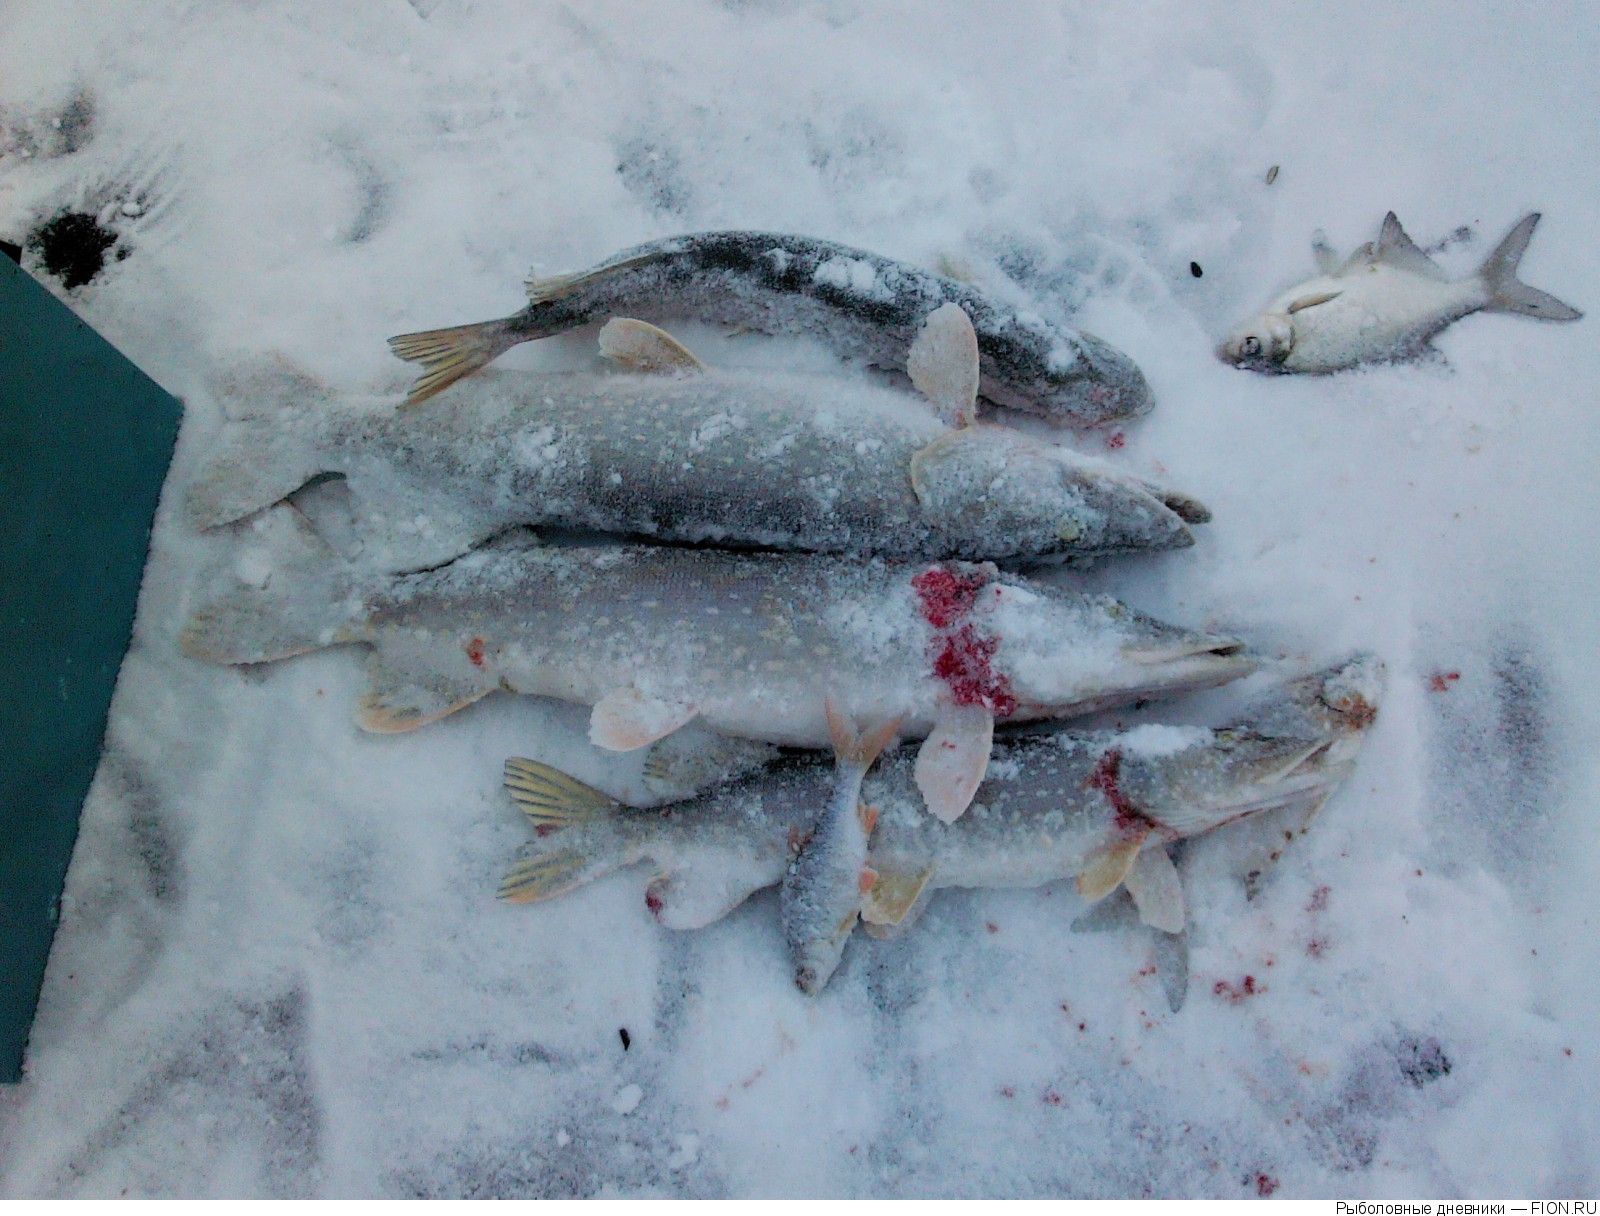 Русское водохранилище рыбалка. Озерна водохранилище рыбалка. Котовский залив рыбалка. Уводьское водохранилище рыбалка зимой. Черкесское водохранилище рыбалка зимой.